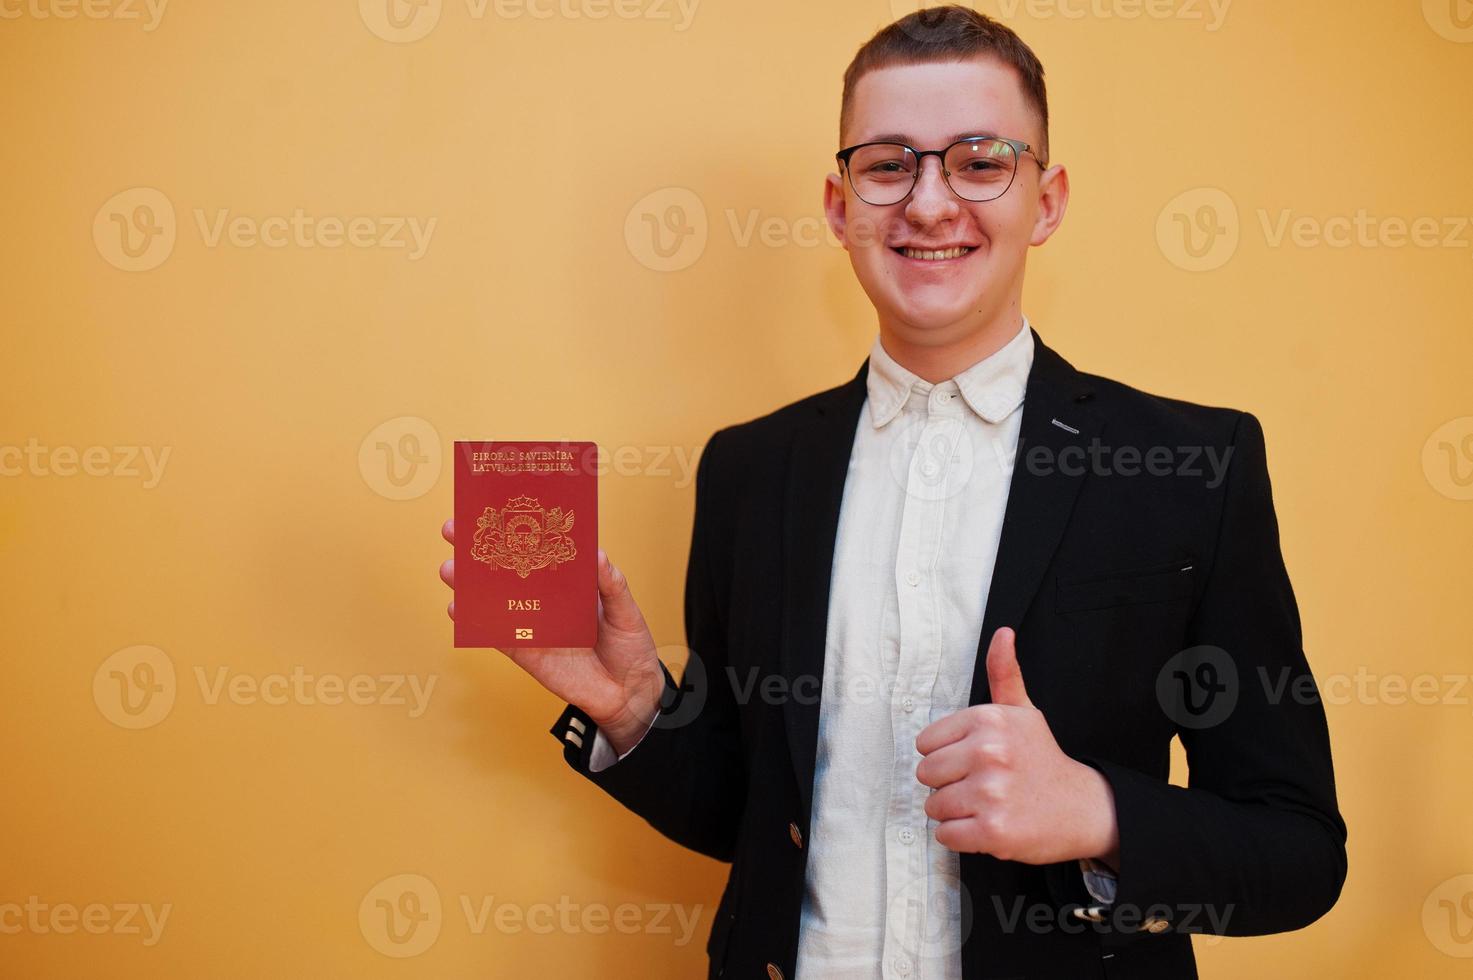 jong knap Mens Holding republiek van Letland paspoort ID kaart over- geel achtergrond, gelukkig en tonen duim omhoog. reizen naar Europa land concept. foto